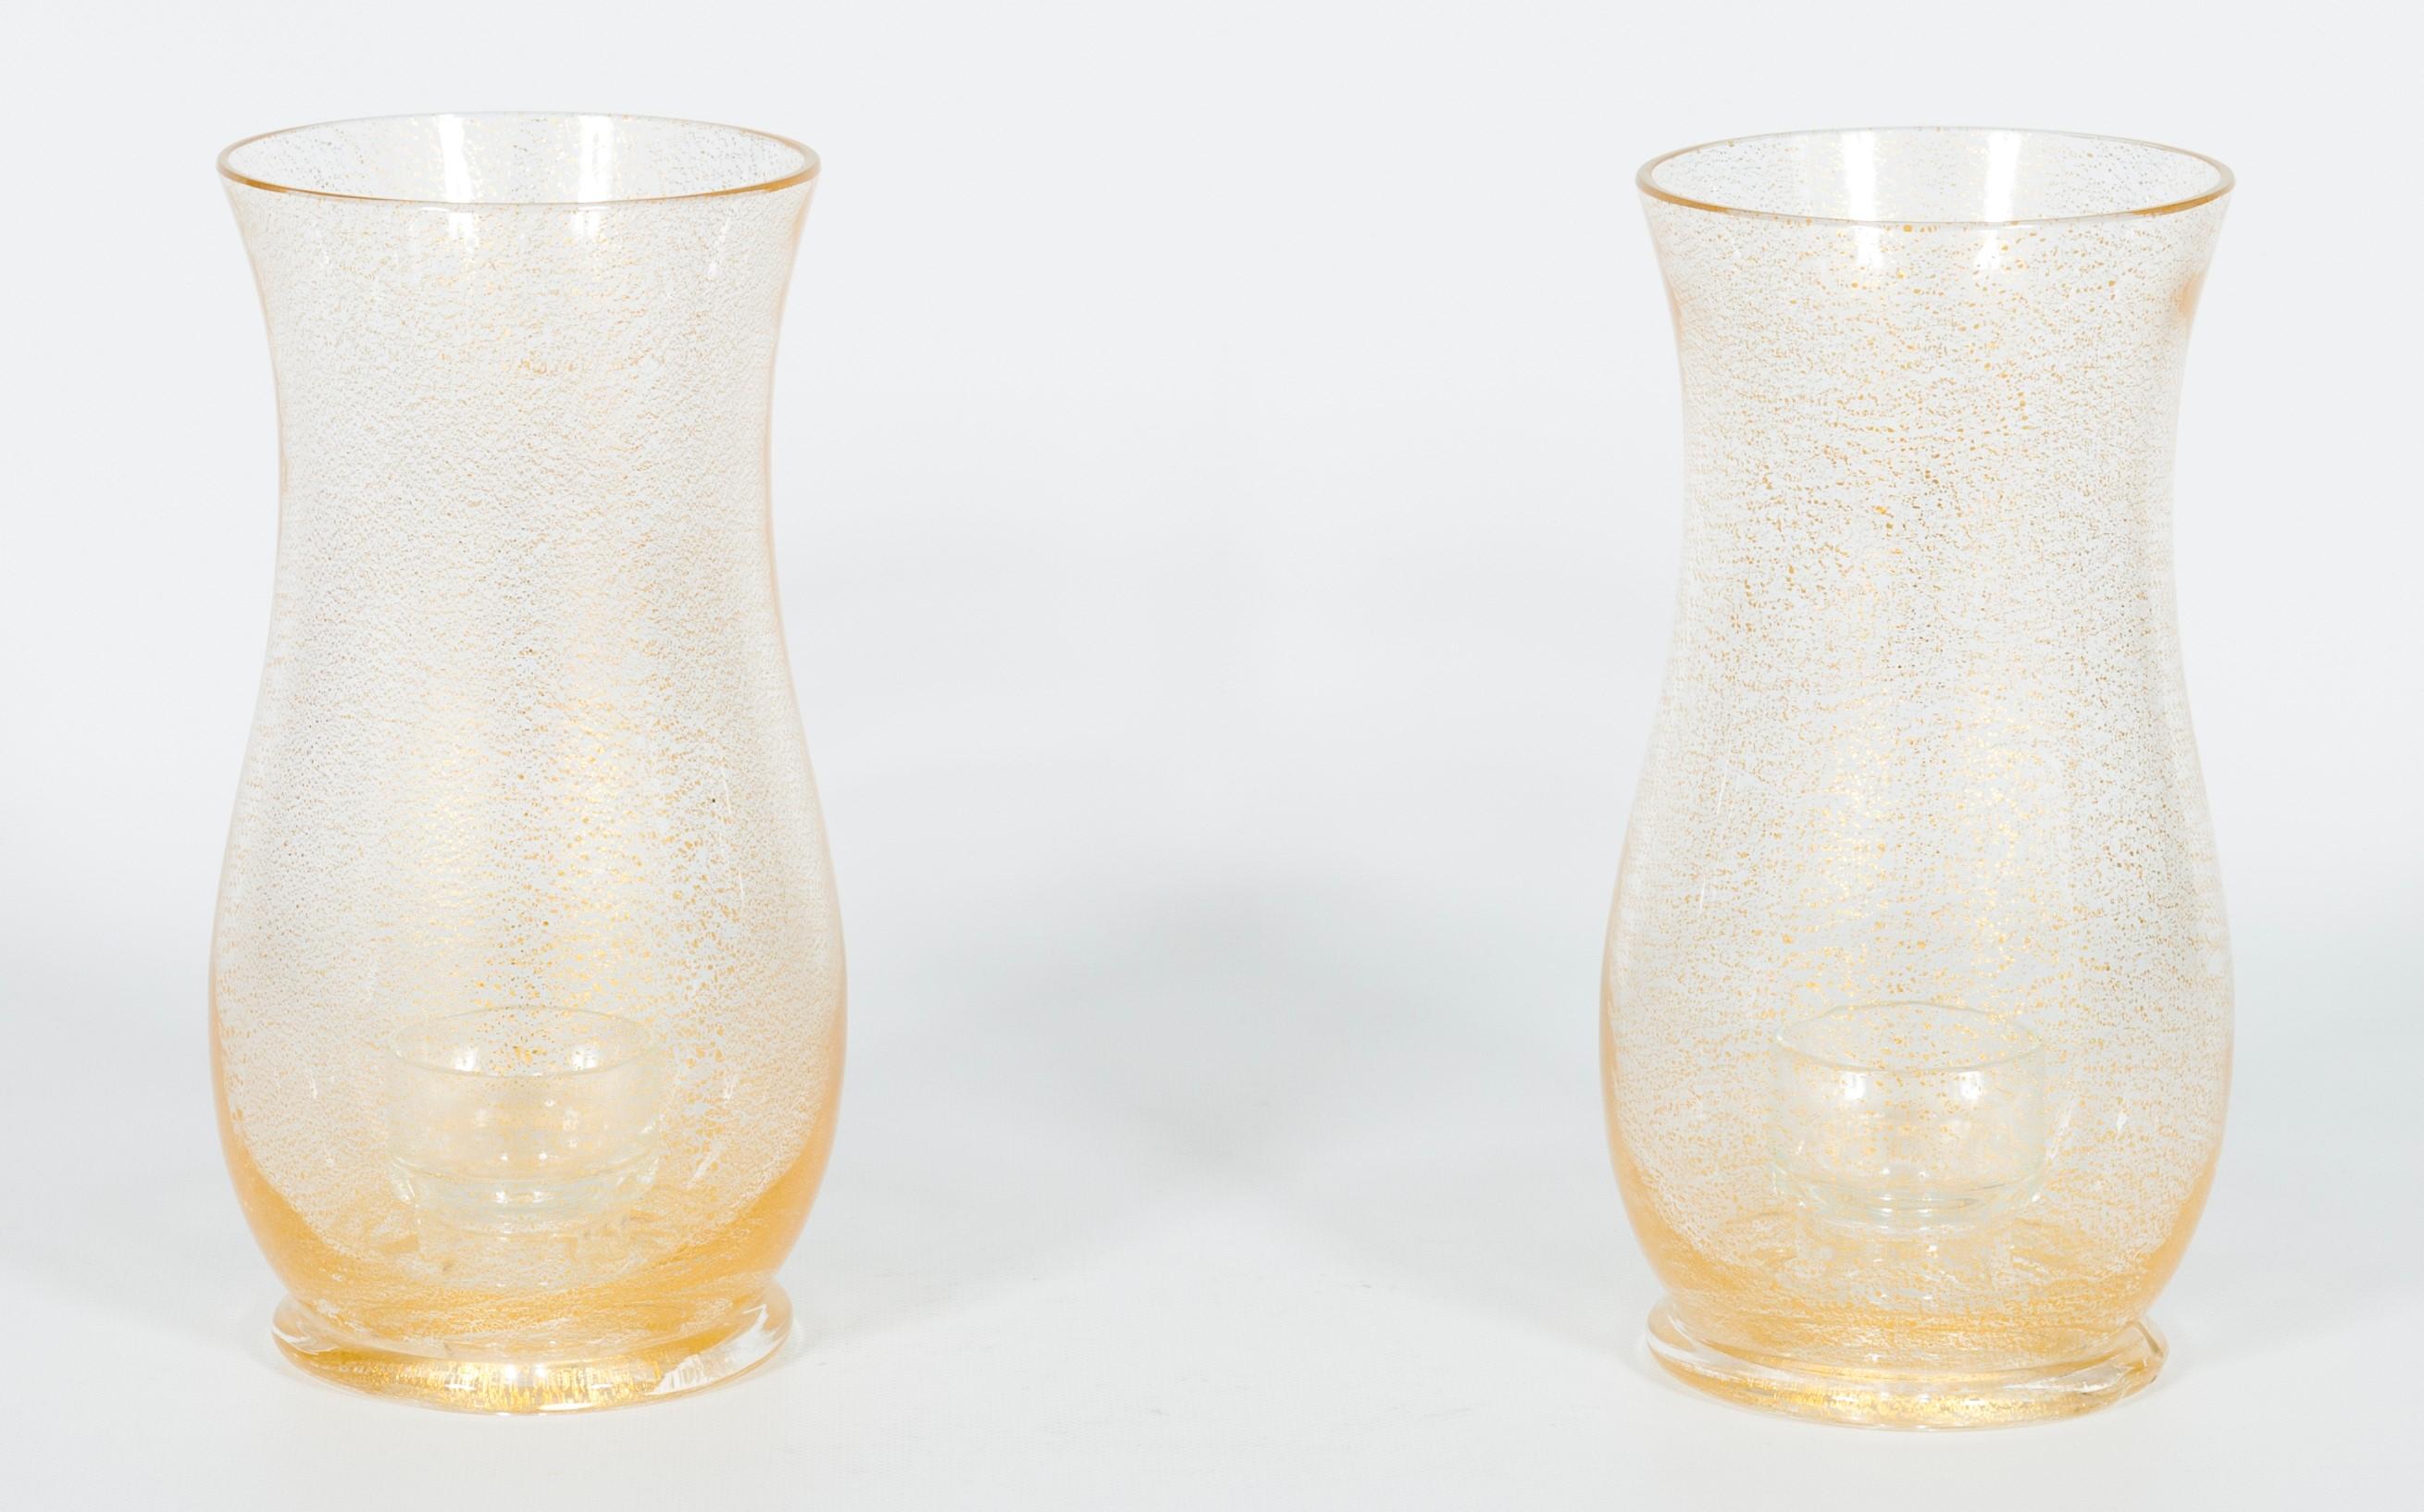 Paar Kerzenhalter aus Muranoglas mit eingetauchtem Gold, zugeschrieben Striulli.
Dieses einzigartige Set aus zwei Kerzenhaltern bringt Schönheit und Eleganz in Ihr Zuhause. Sie wurden in den 1980er Jahren auf der italienischen Insel Murano aus